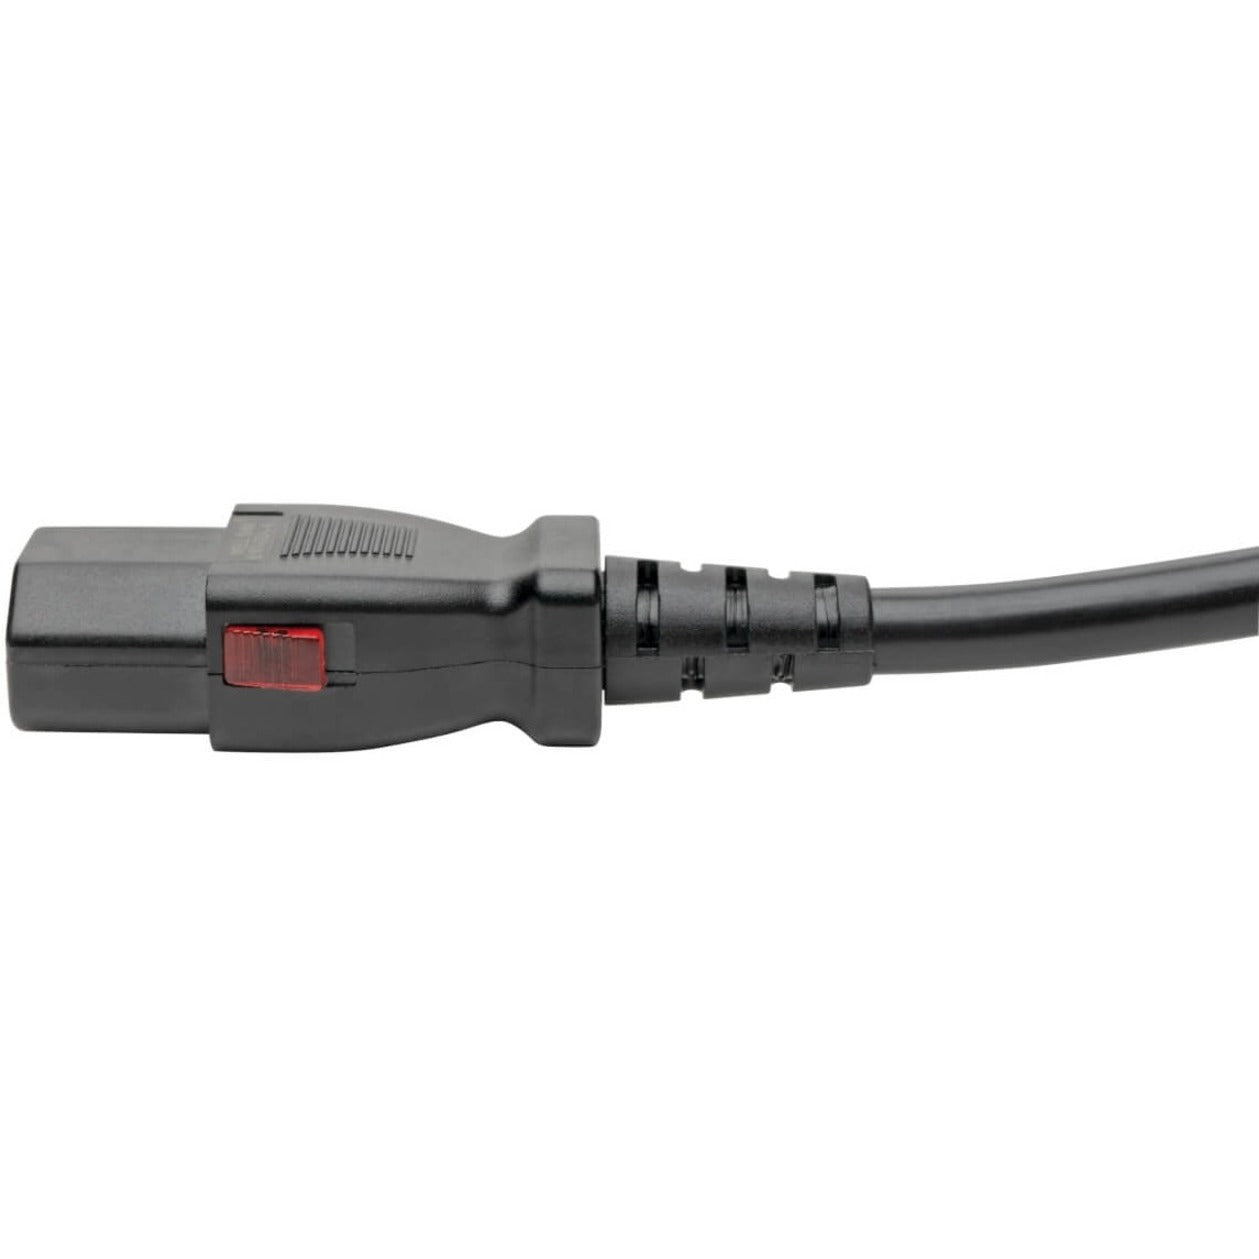 Tripp Lite by Eaton P004-L10 Power Extension Cord